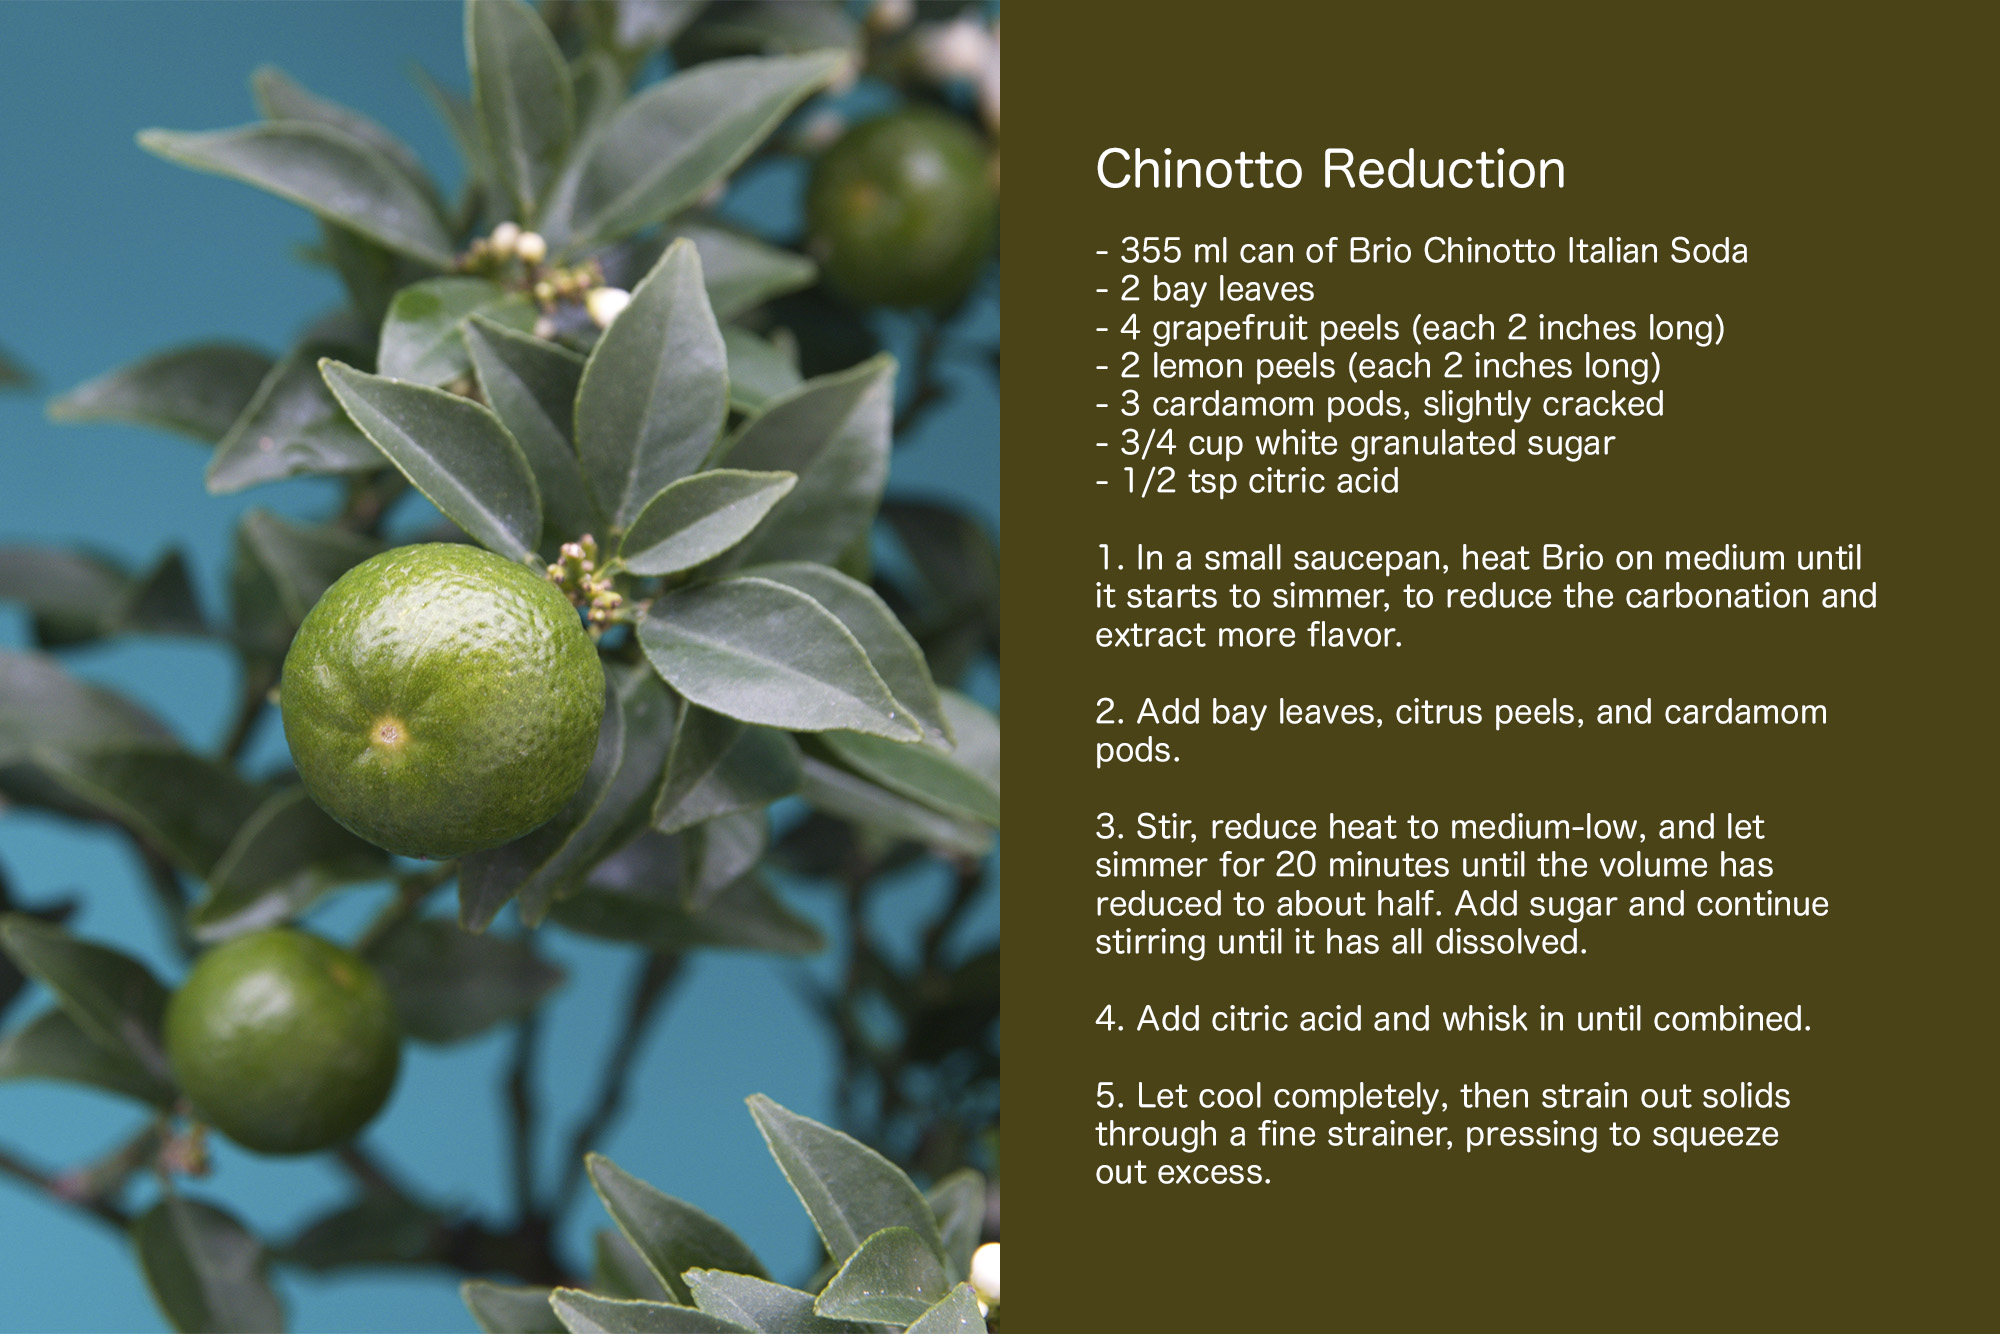 Chinotto Reduction recipe